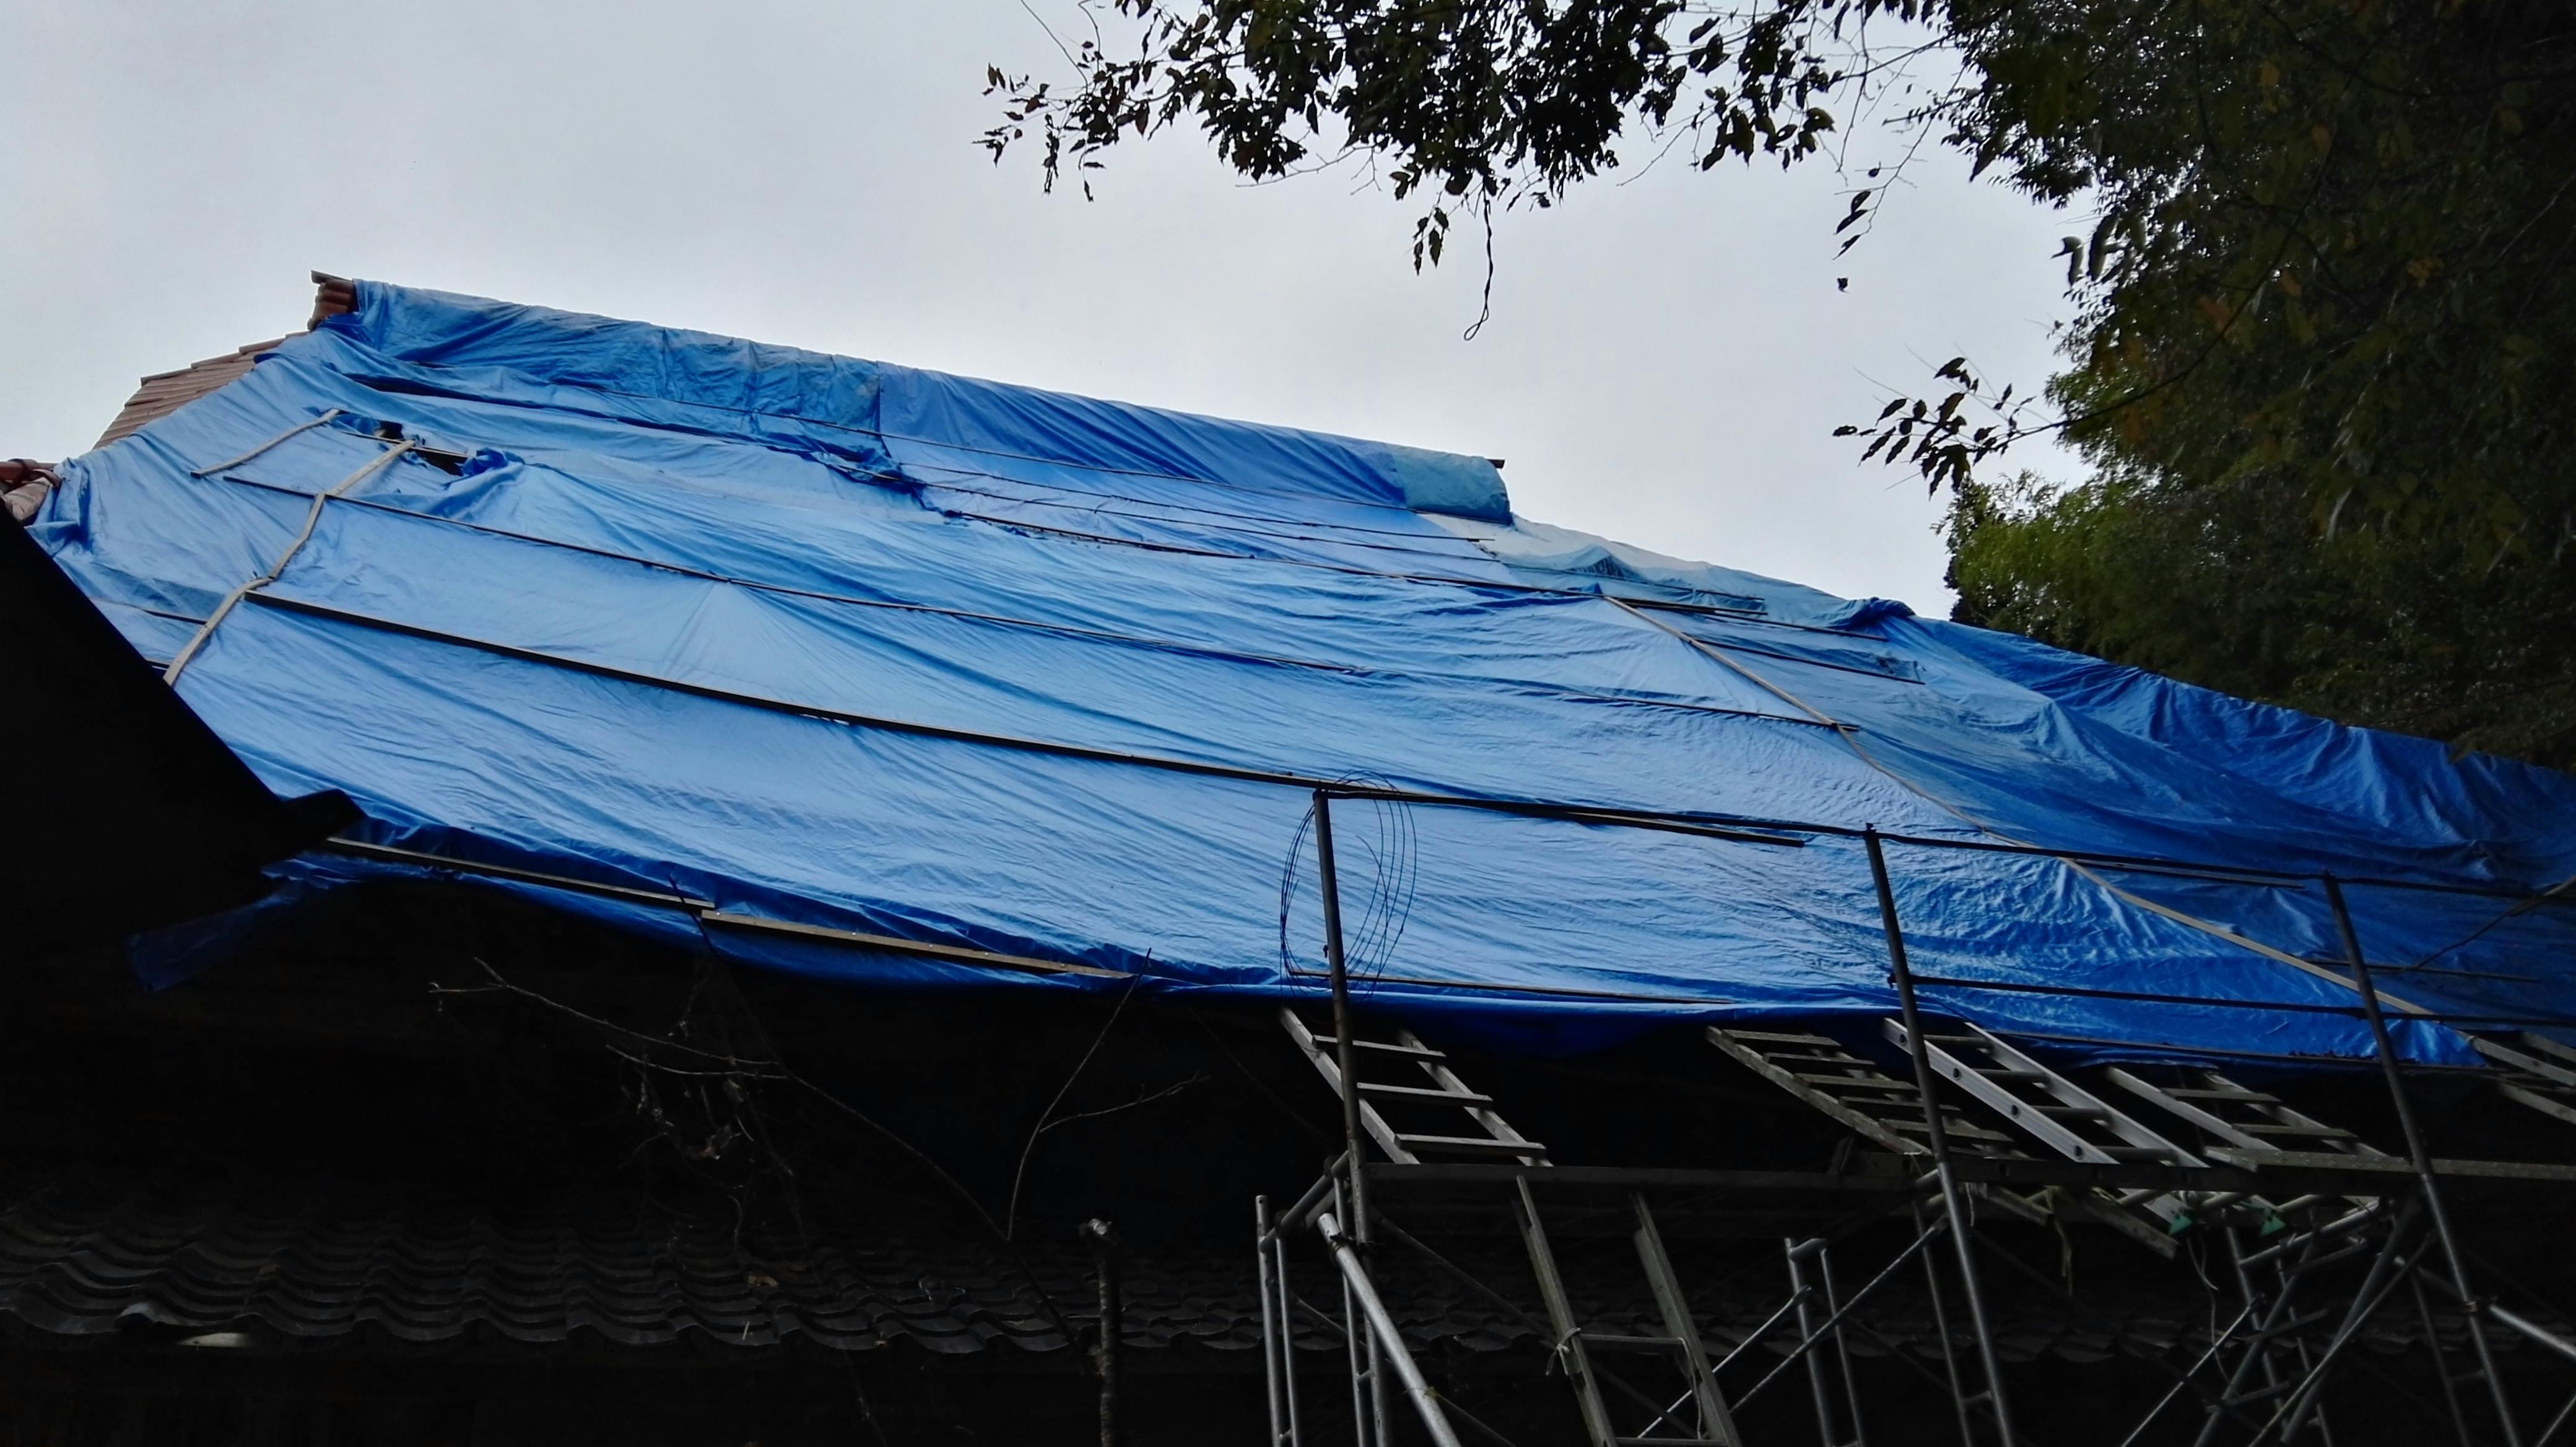 佐渡のウサギ寺 長谷寺 を助けて 台風で飛ばされた屋根を修理したい Campfire キャンプファイヤー